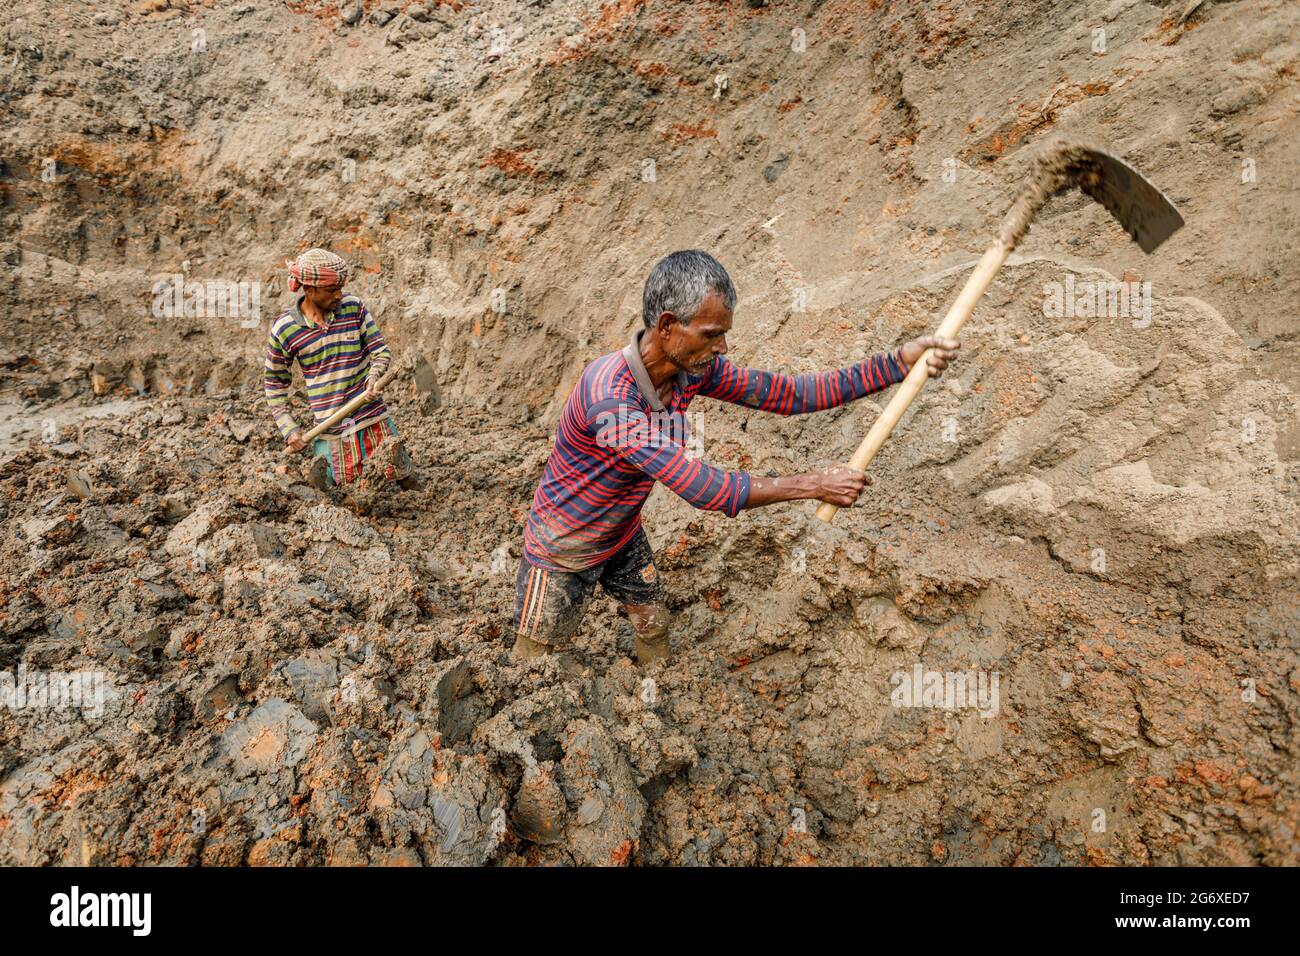 I lavoratori di Brickfield scavano l'argilla dal letto di fiume asciutto in Ashulia per uso come materia prima nella fabbricazione dei mattoni di costruzione. Durante la stagione secca, i letti di fiume esposti si trasformano in brickfields altamente non regolamentati. A causa dell'elevata domanda di materiali da costruzione a basso costo, la produzione di mattoni in argilla è diventata un'industria fiorente in Bangladesh, con forni di produzione fortemente concentrati nelle periferie delle città più grandi. Questi siti di produzione, noti come brickfields, operano utilizzando tecnologie secolari che espellono polvere, cenere, fumo nero e altre sostanze inquinanti negli atmos Foto Stock